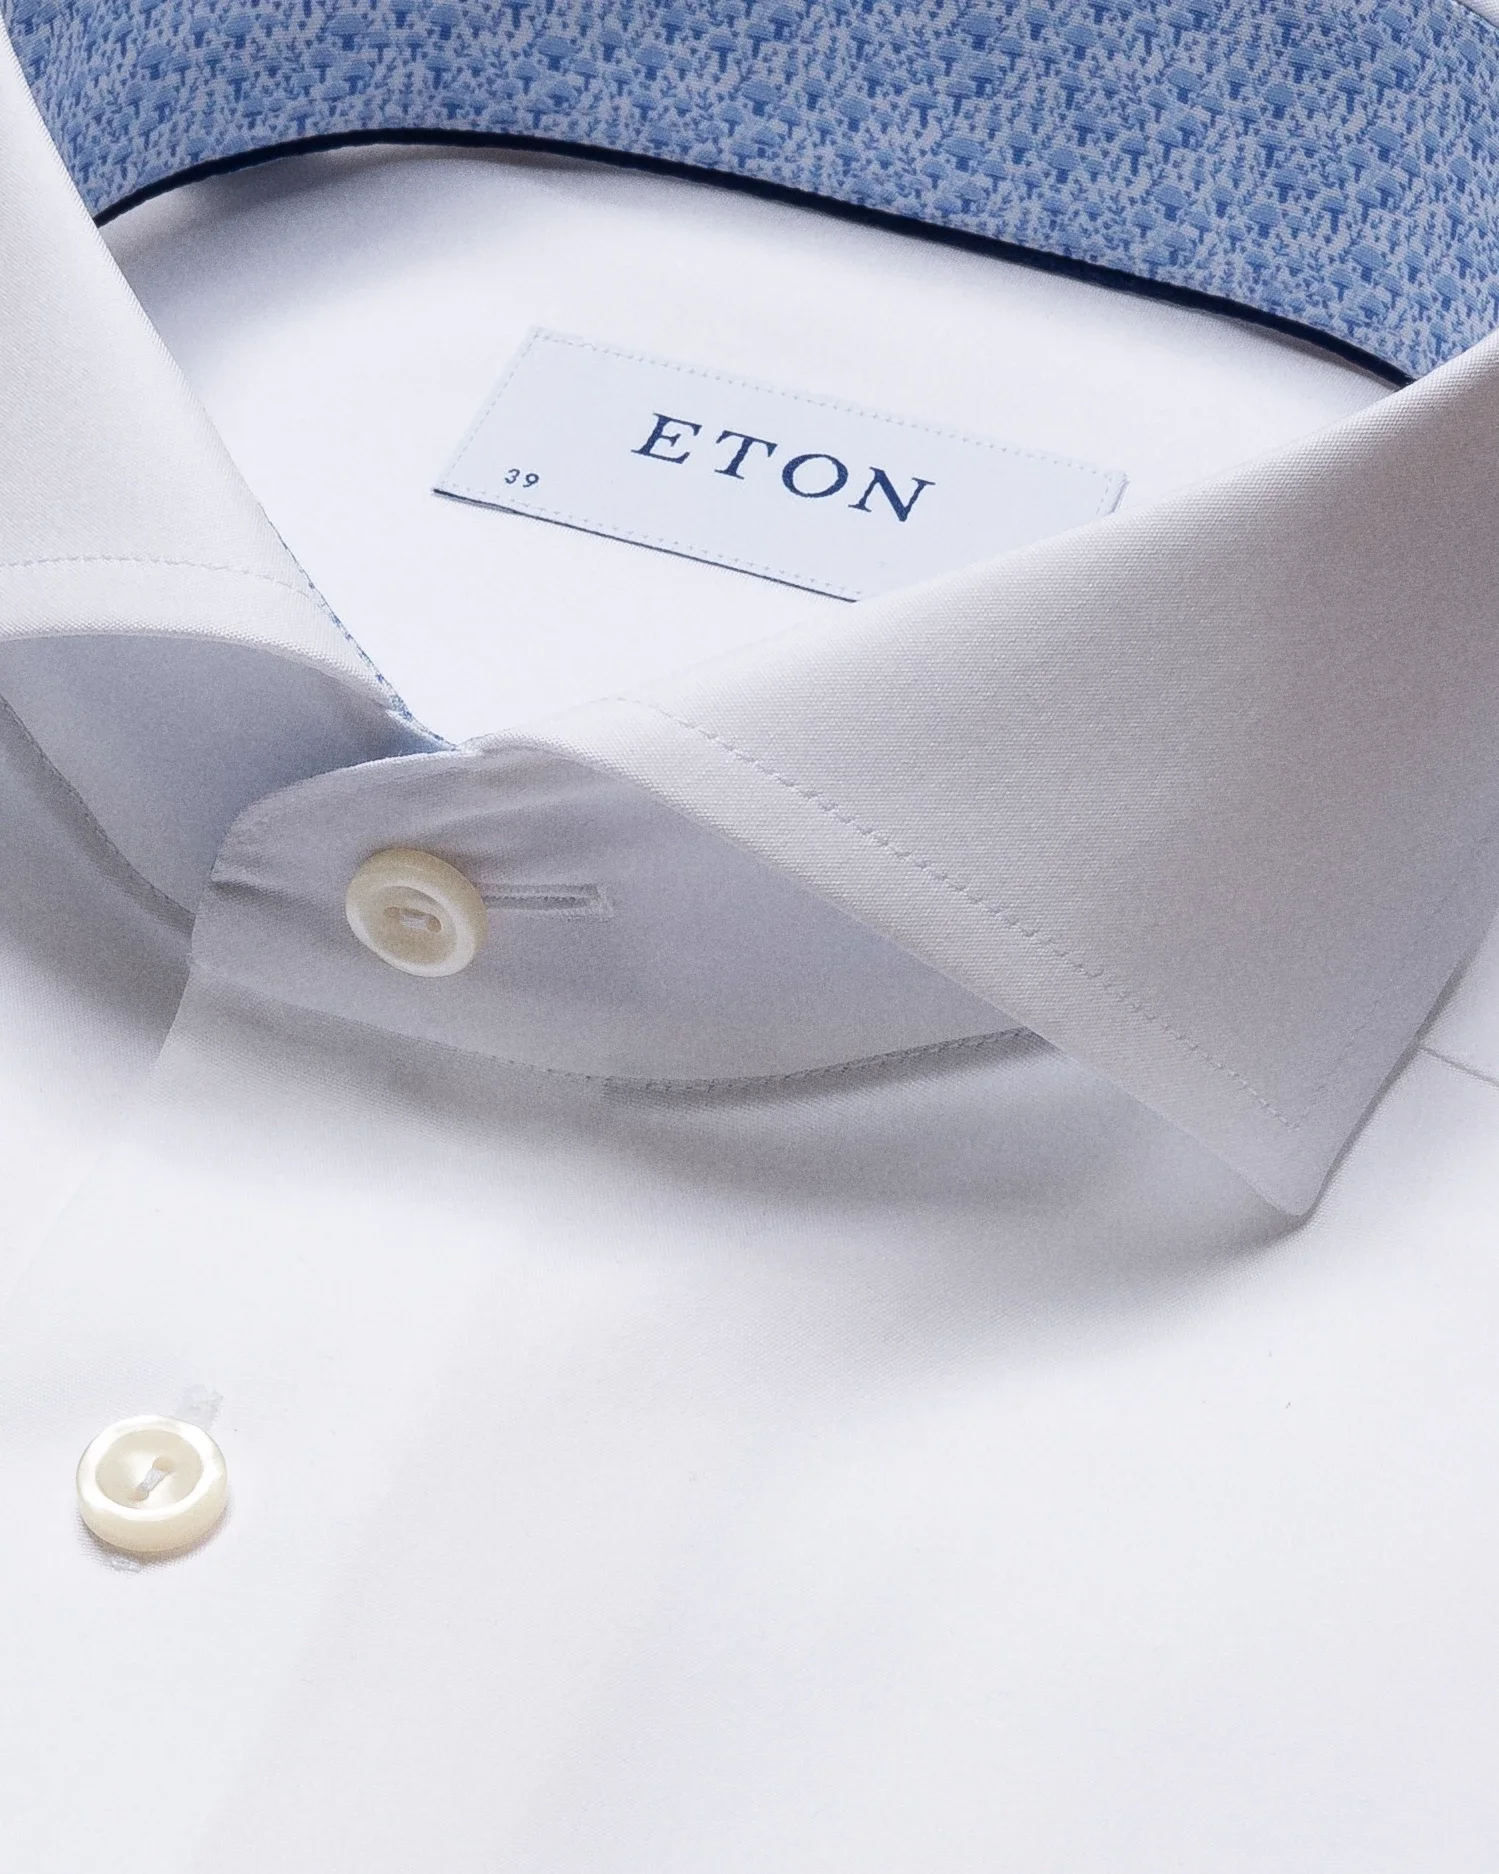 Eton - white poplin shirt mushroom print details